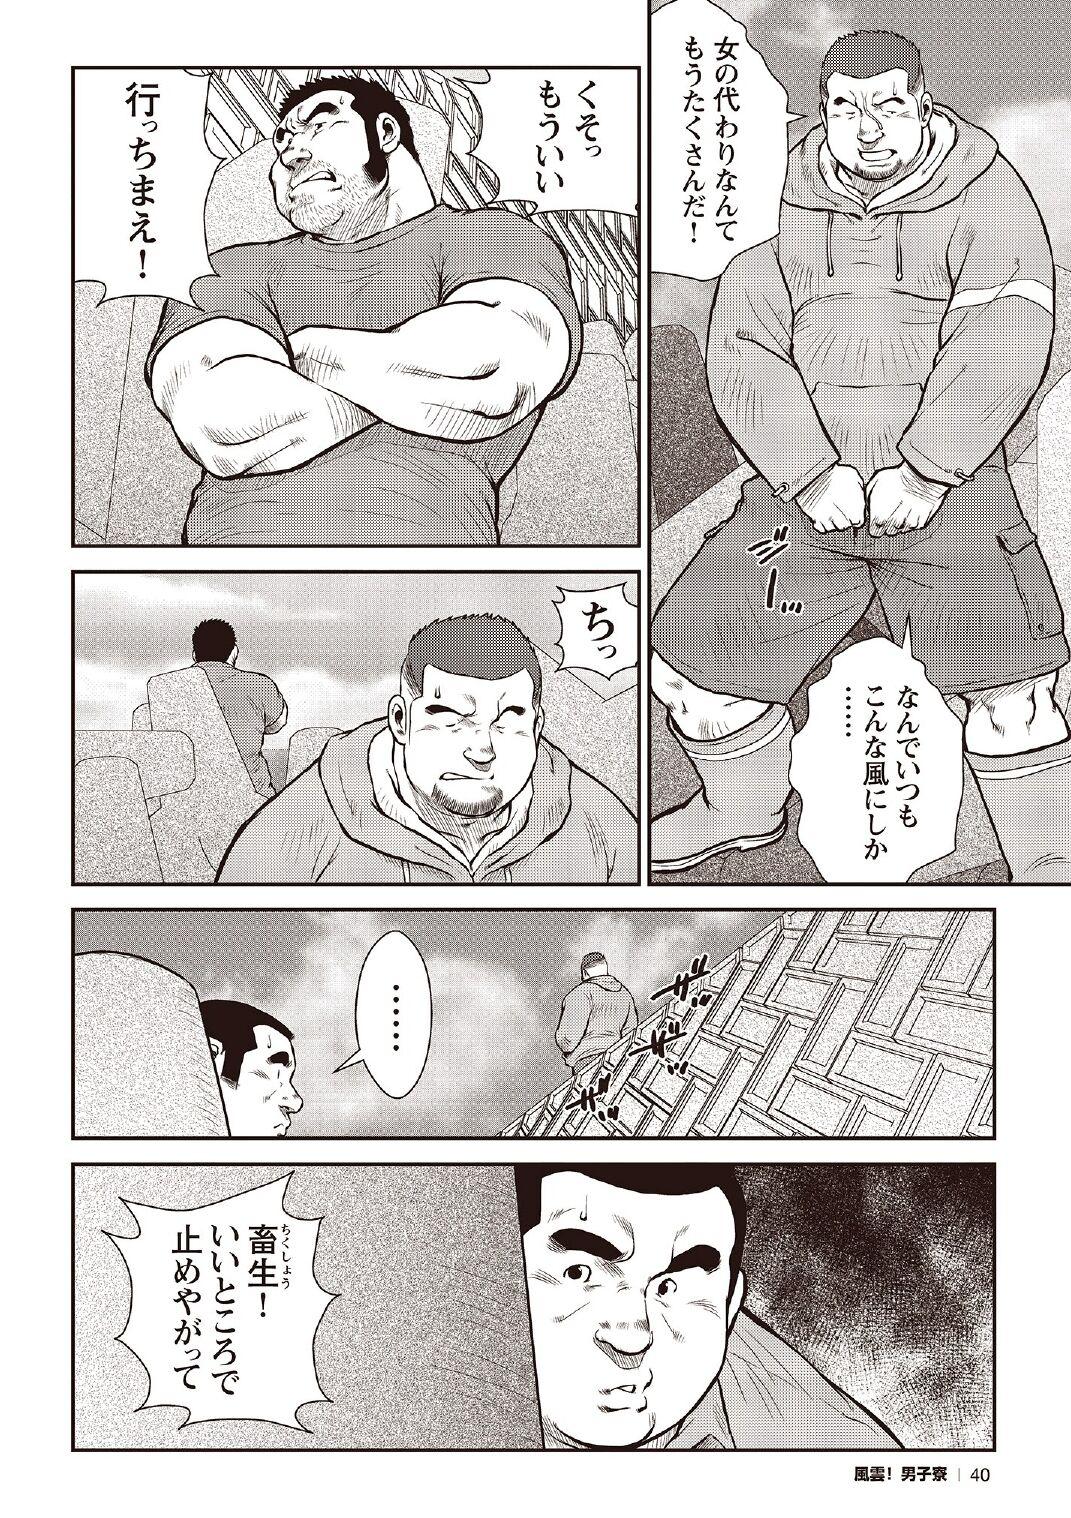 [Ebisubashi Seizou] Ebisubashi Seizou Tanpen Manga Shuu 2 Fuuun! Danshi Ryou [Bunsatsuban] PART 2 Bousou Hantou Taifuu Zensen Ch. 1 + Ch. 2 [Digital] 17